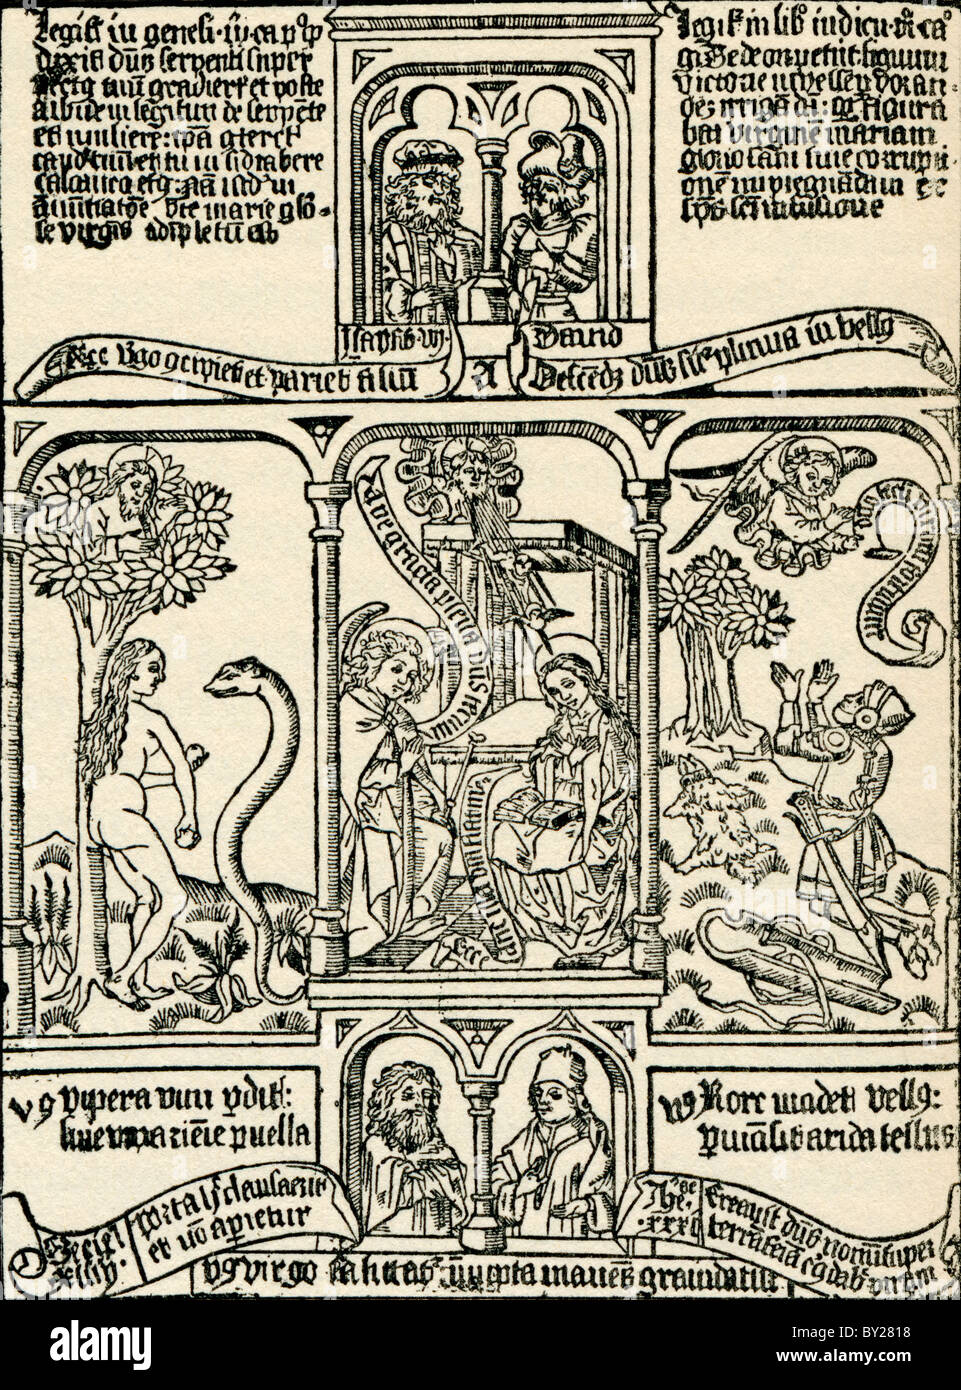 Ilustraciones bíblicas. Desde Geschiedenis van Nederland, publicado en 1936. Foto de stock